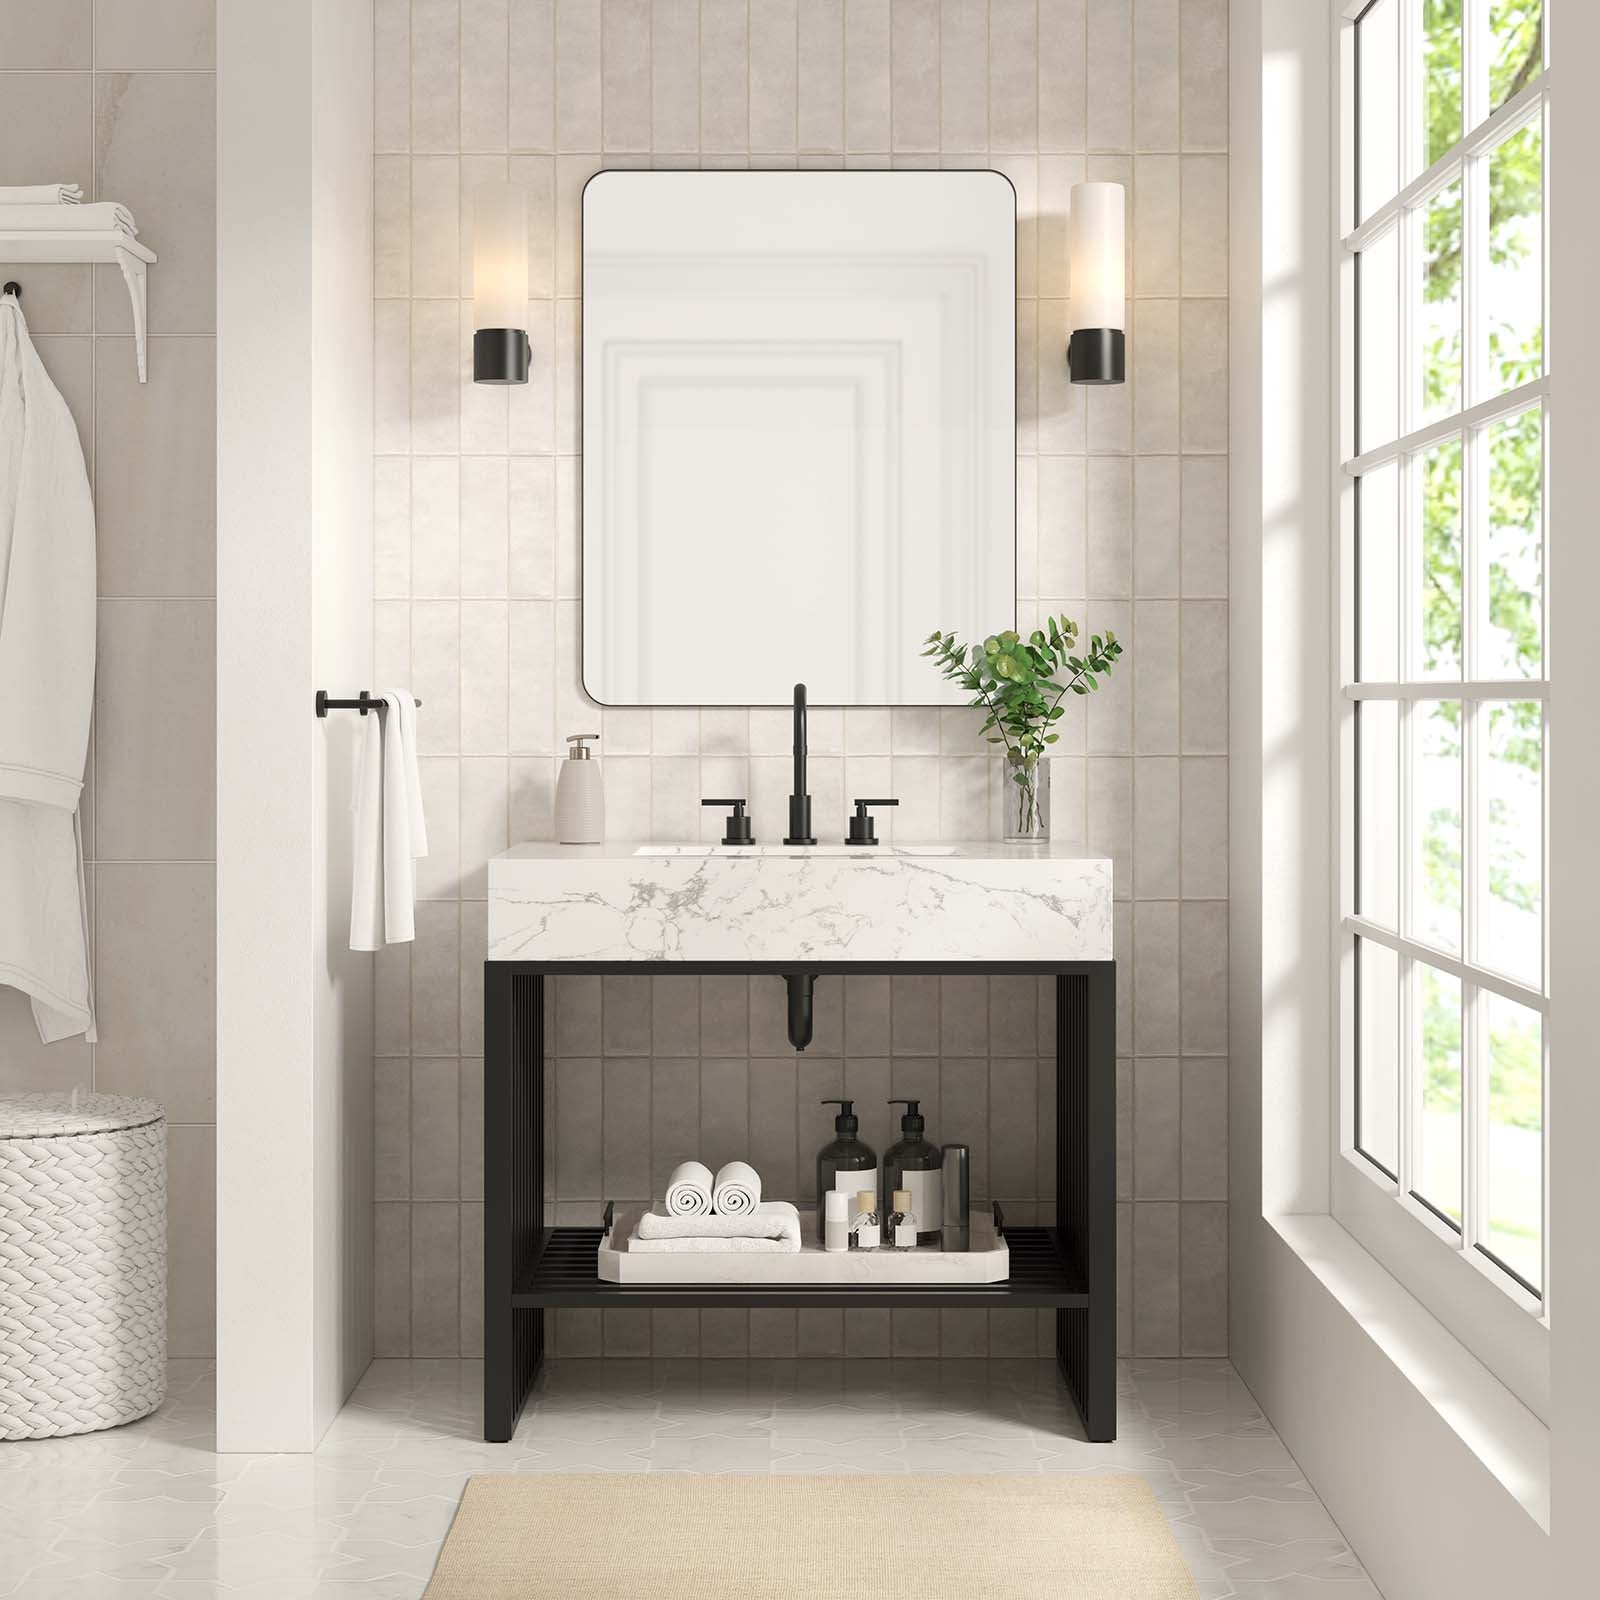 Gridiron 36" Bathroom Vanity-Bathroom Vanity-Modway-Wall2Wall Furnishings